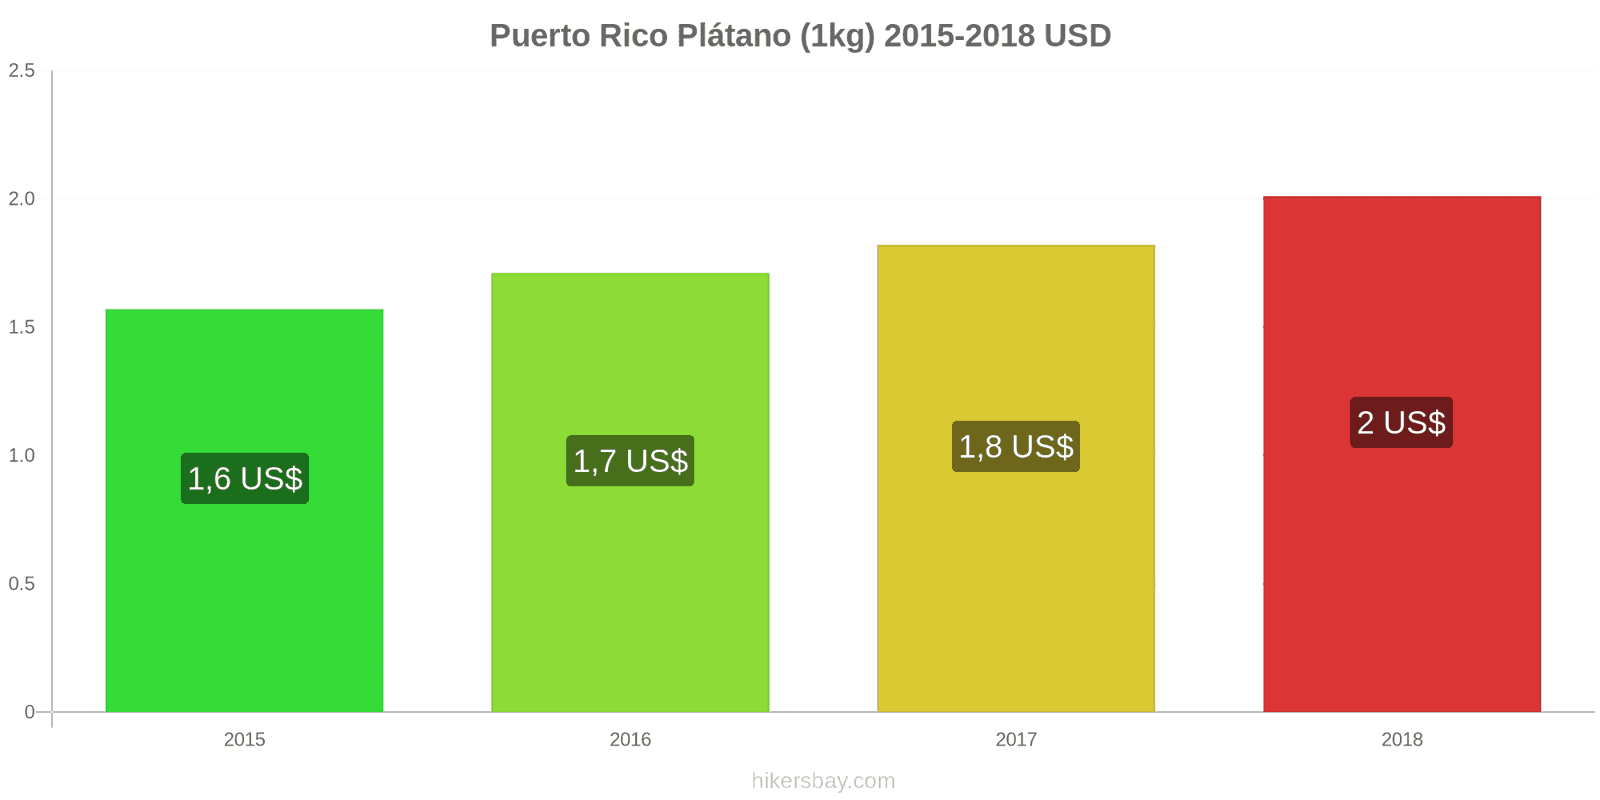 Puerto Rico cambios de precios Plátanos (1kg) hikersbay.com